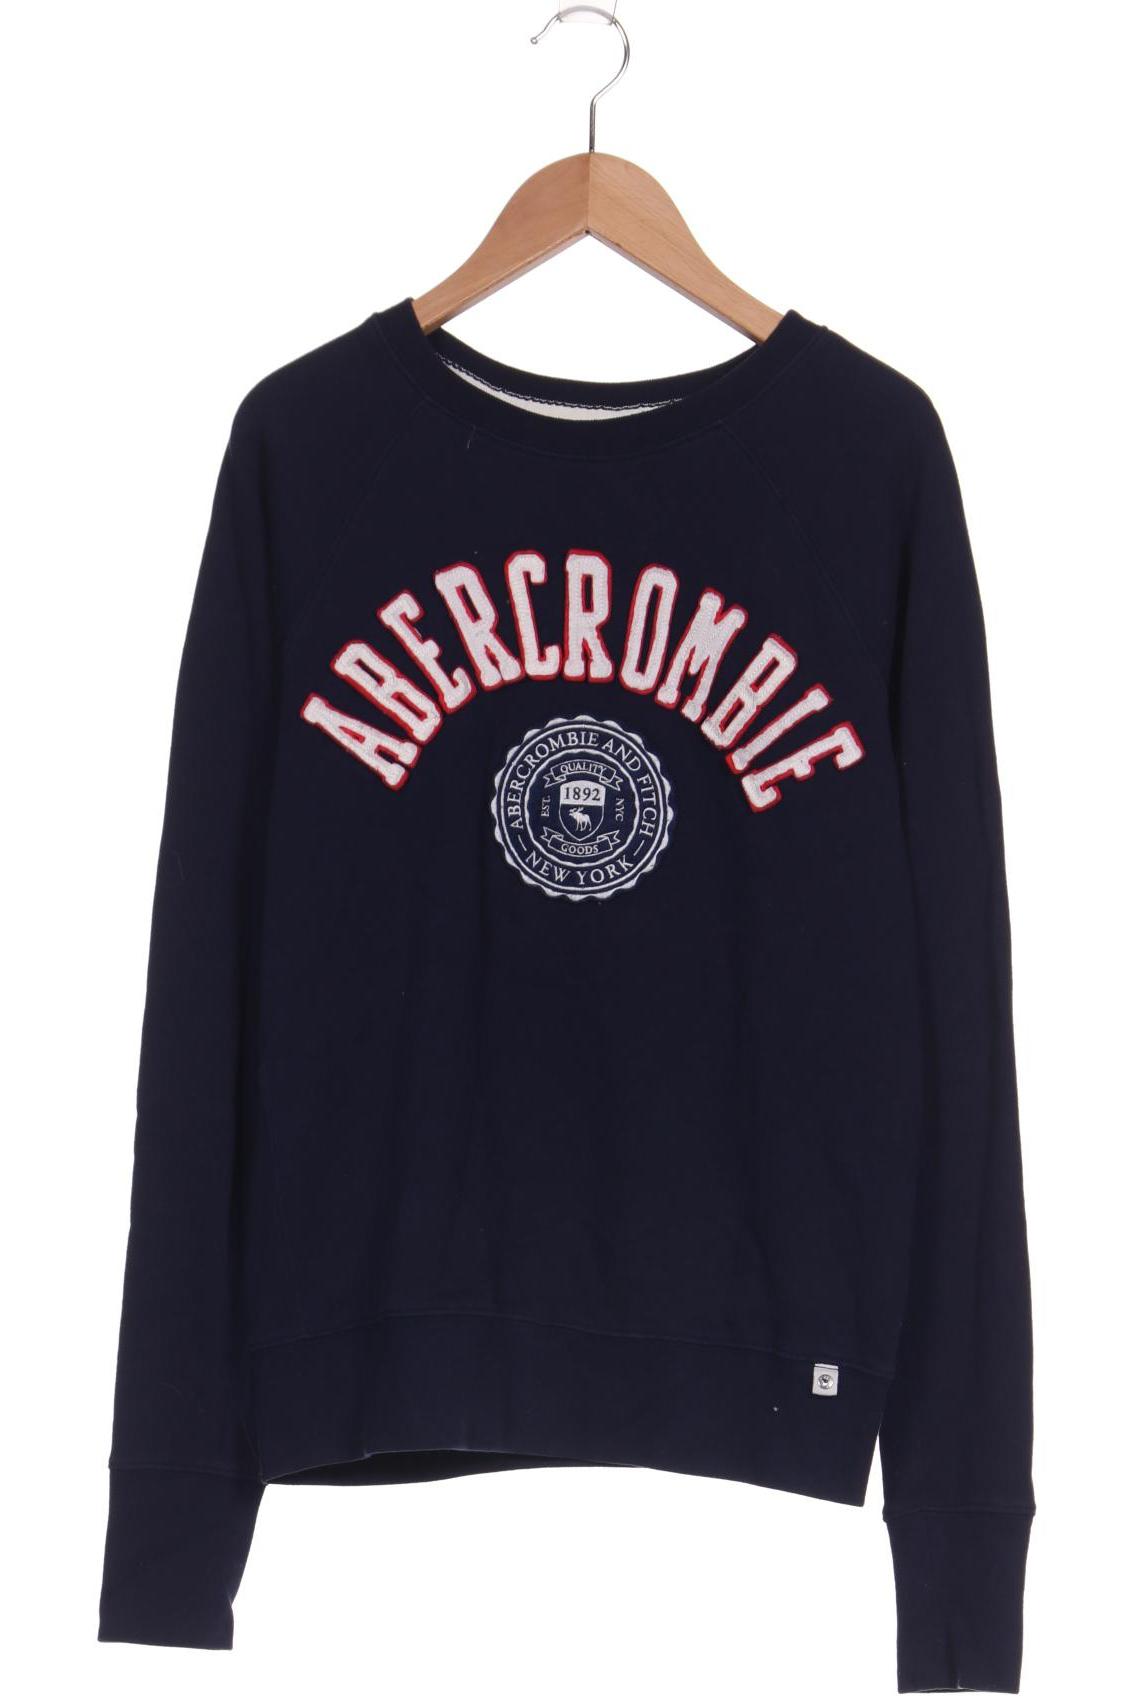 Abercrombie & Fitch Damen Sweatshirt, marineblau von Abercrombie & Fitch